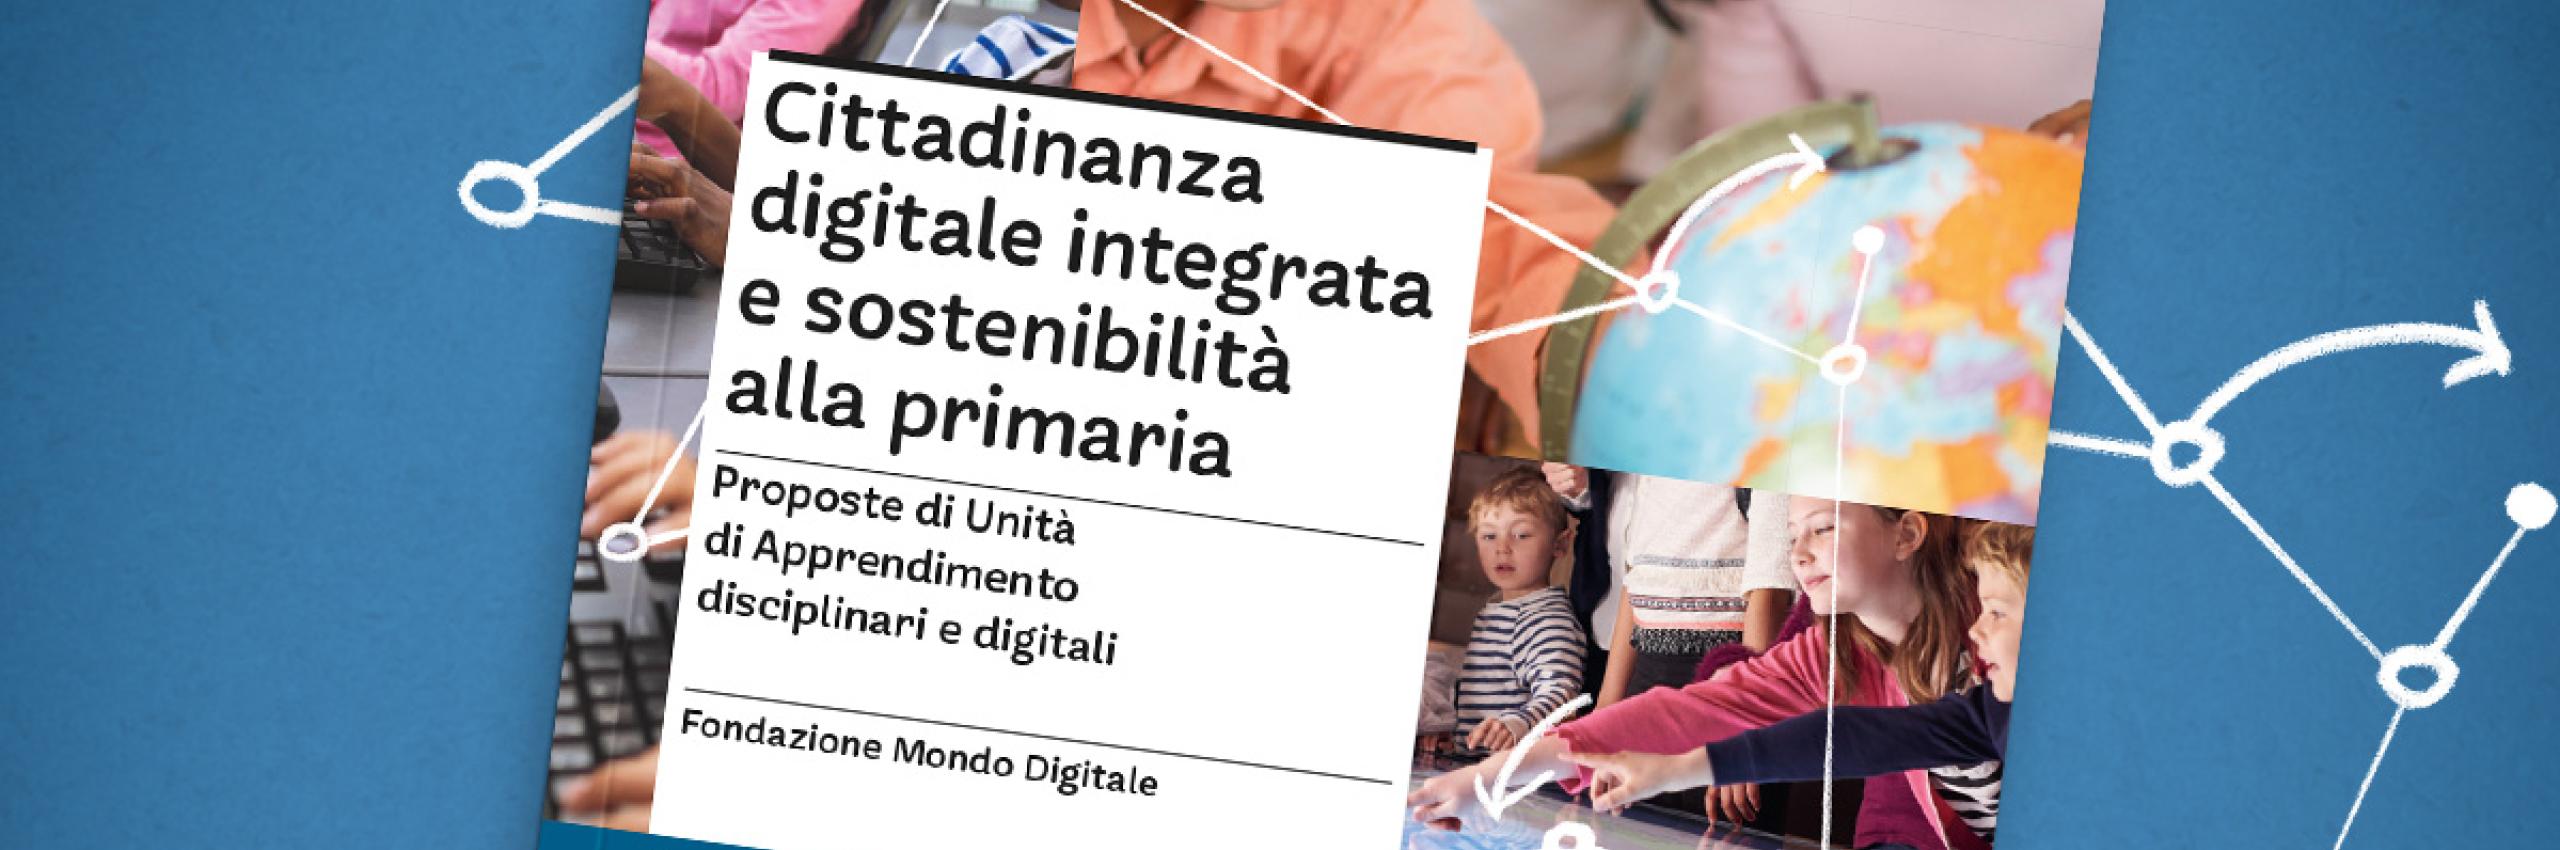 Cittadinanza digitale integrata e sostenibilità alla primaria